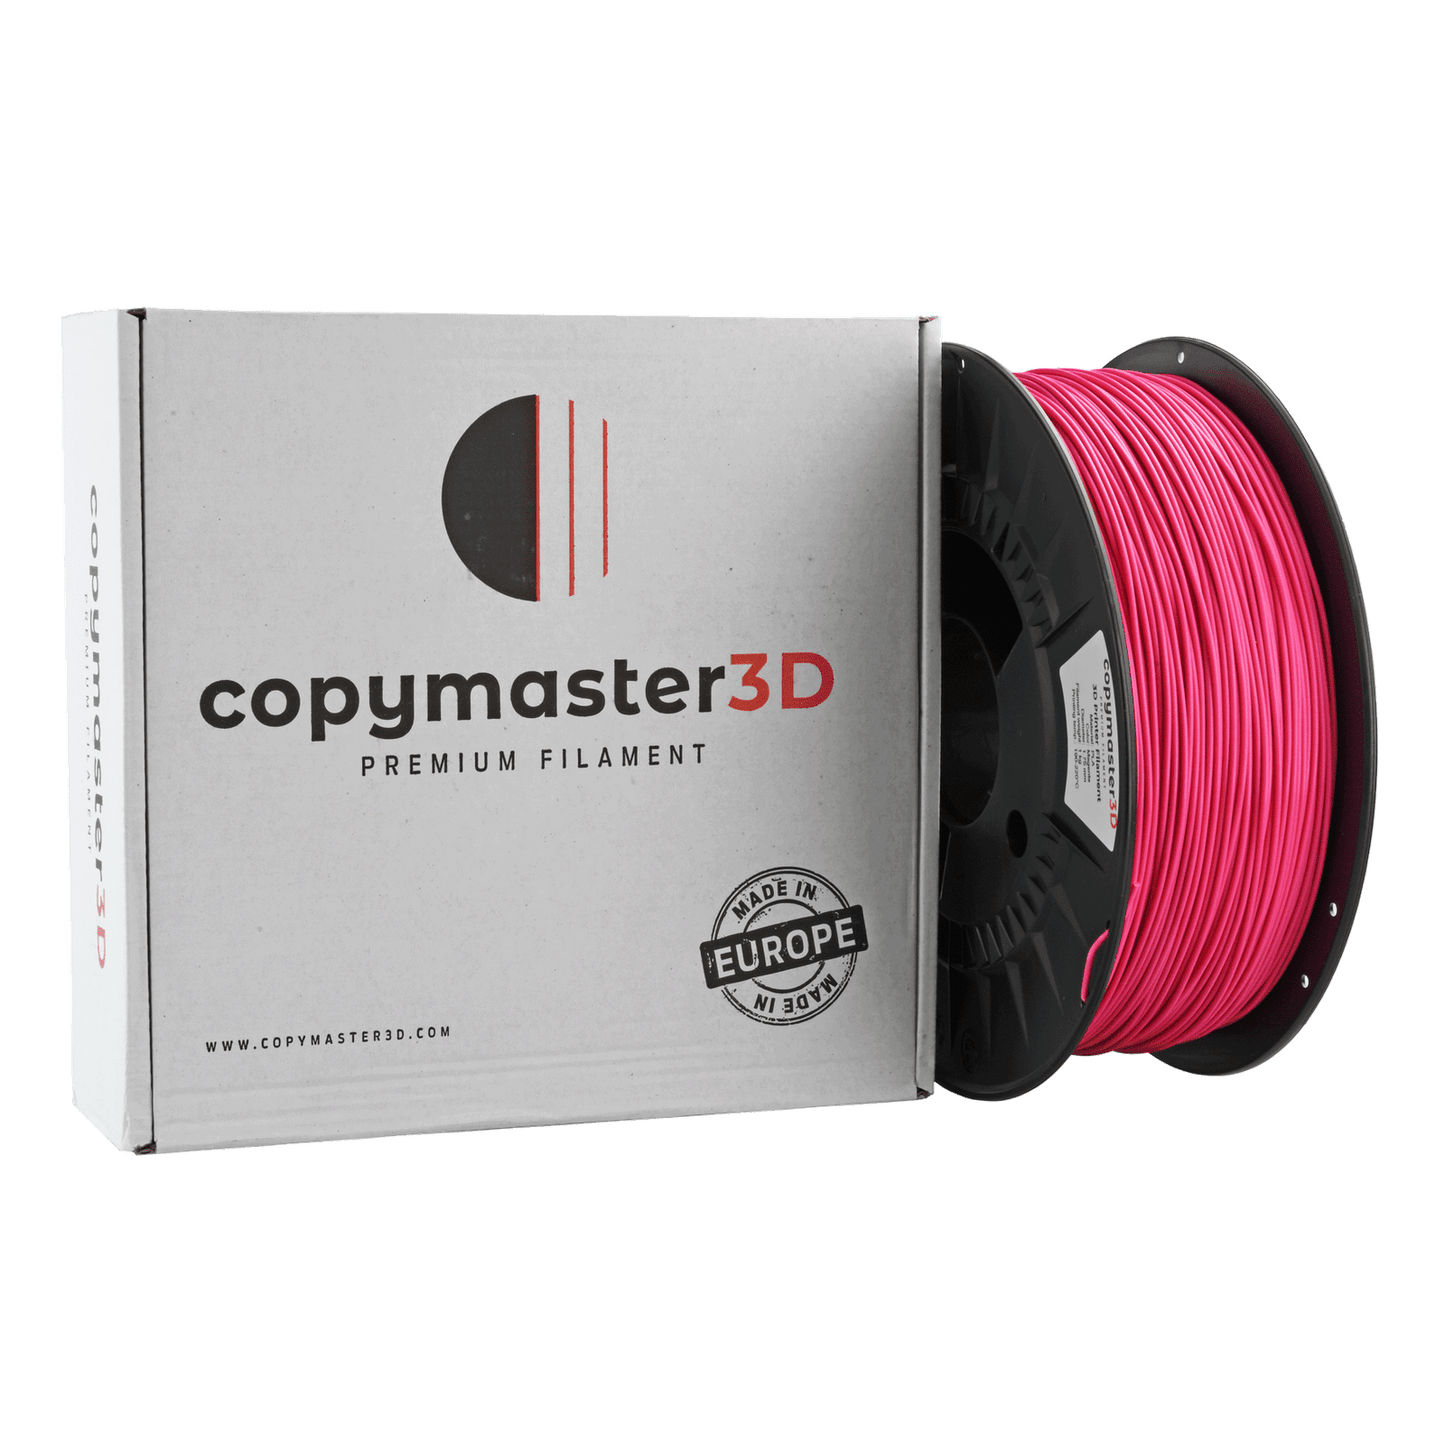 Copymaster3D Premium PLA Filament 1.75mm 1KG Magenta